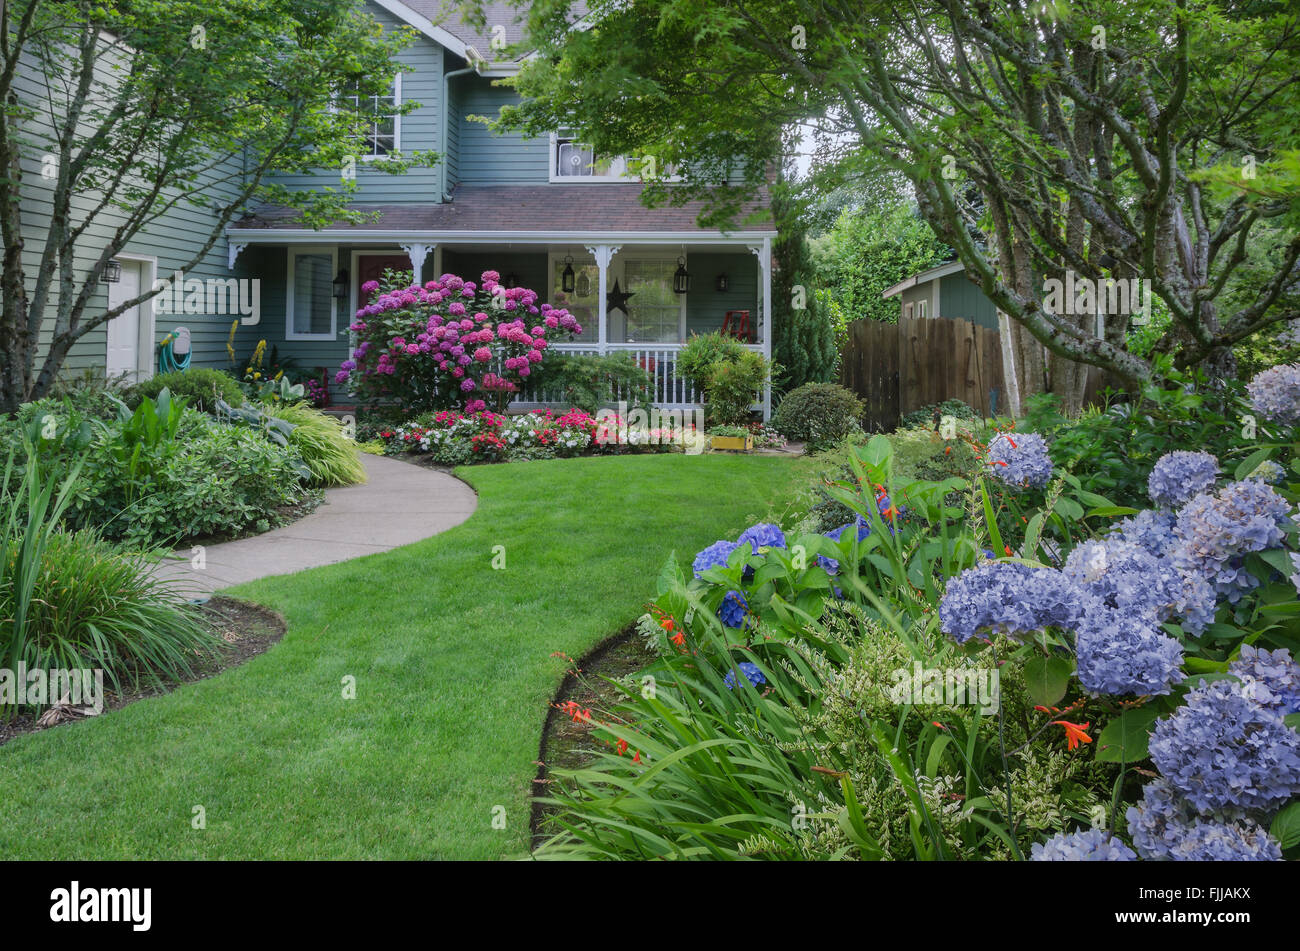 Entrada a una casa a través de un hermoso jardín, destacadas por rosas y hortensias azules. Foto de stock